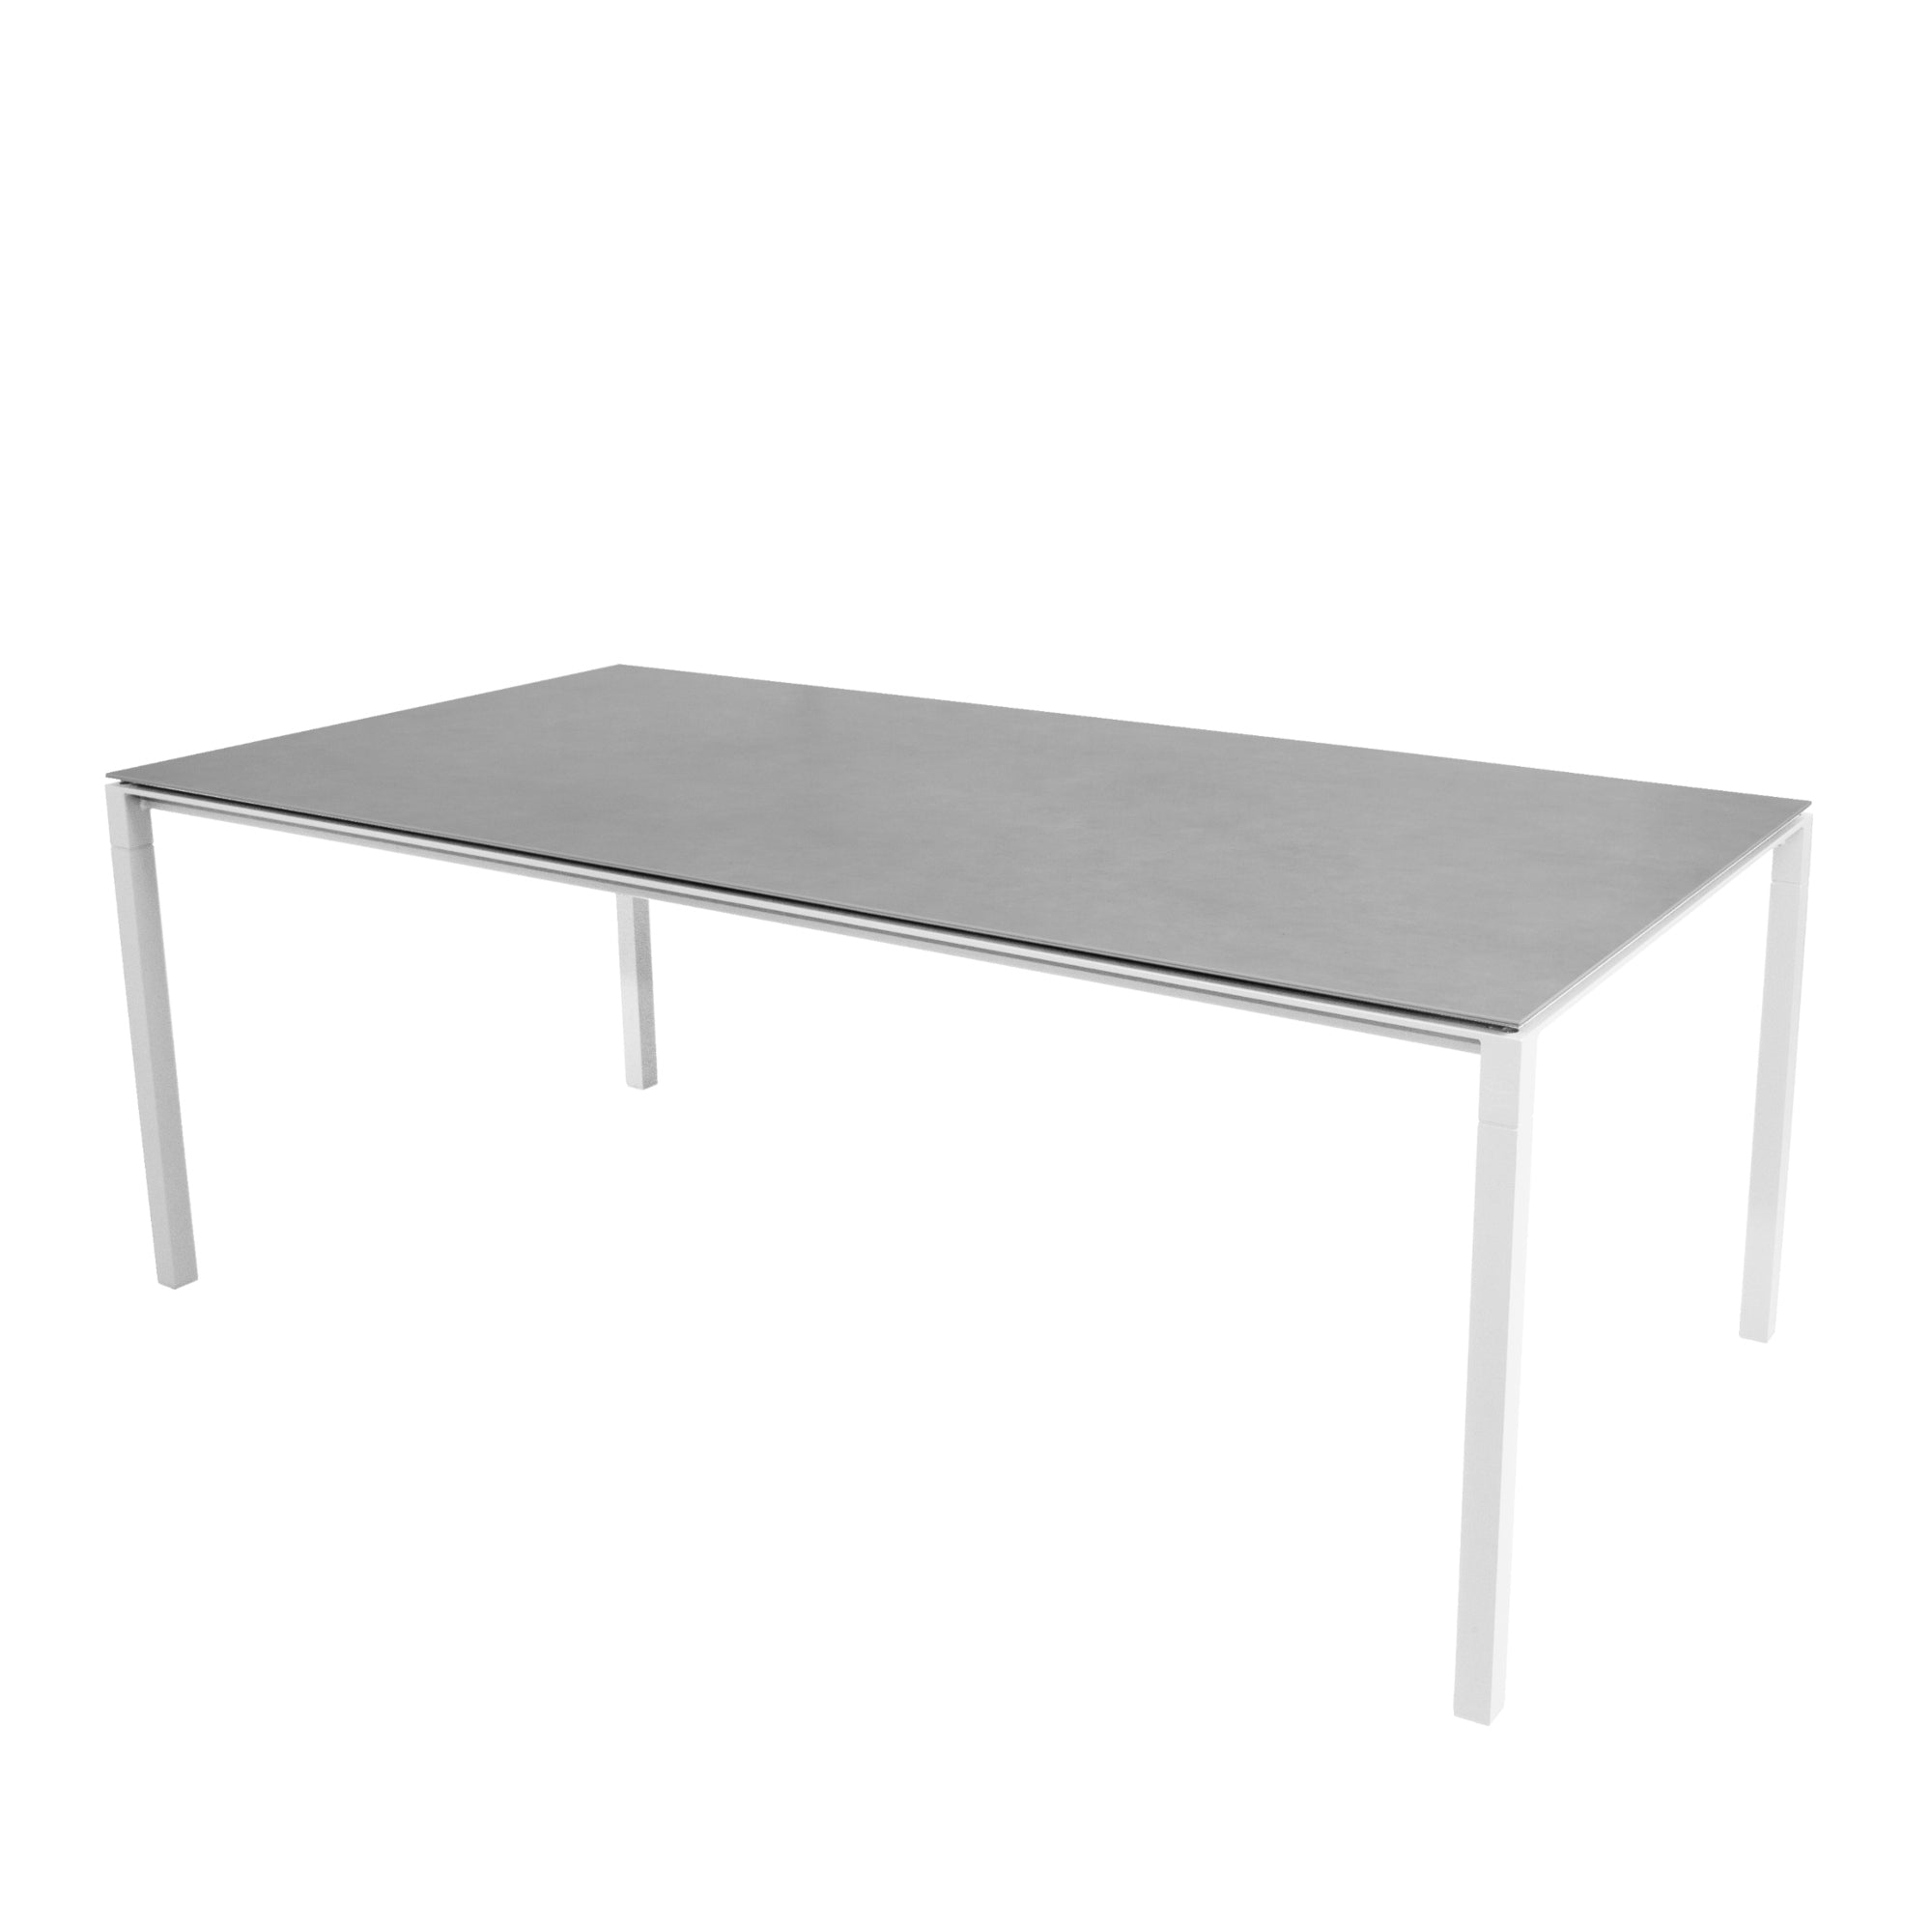 Cane-line Pure pöytä 200x100 valkoinen/betoninharmaa Cane-line